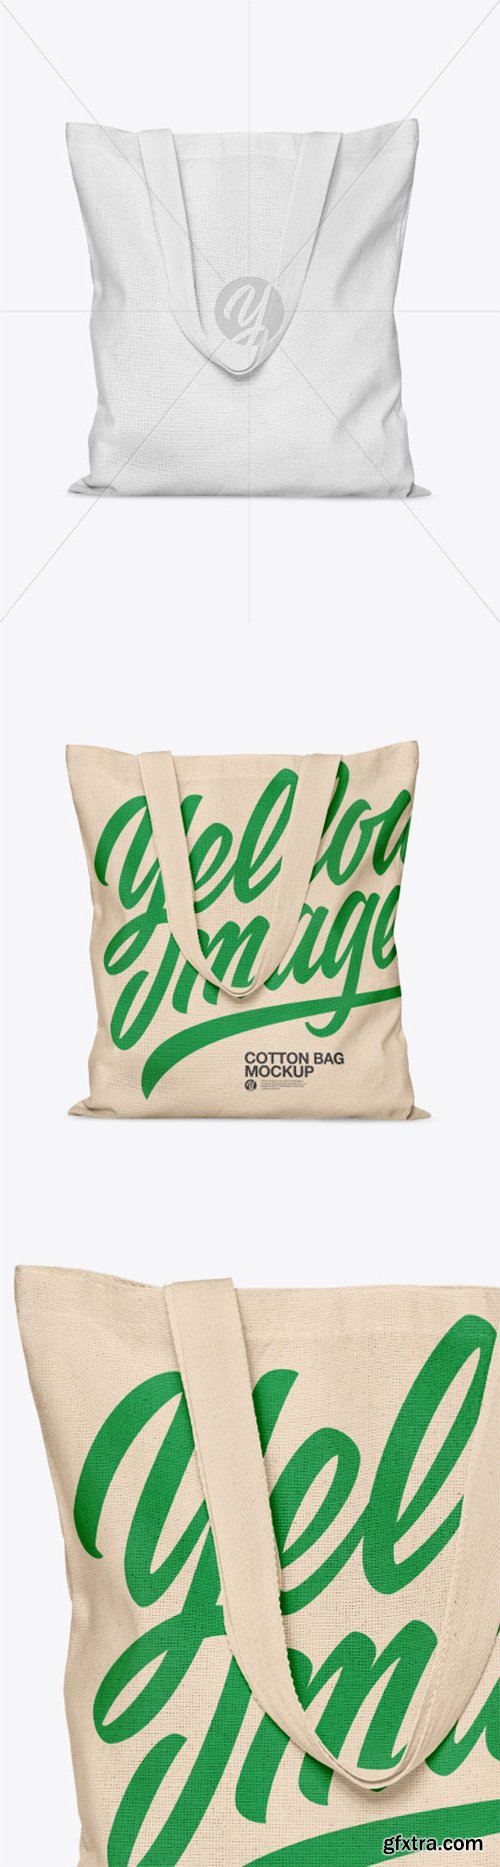 Cotton Bag Mockup 55520